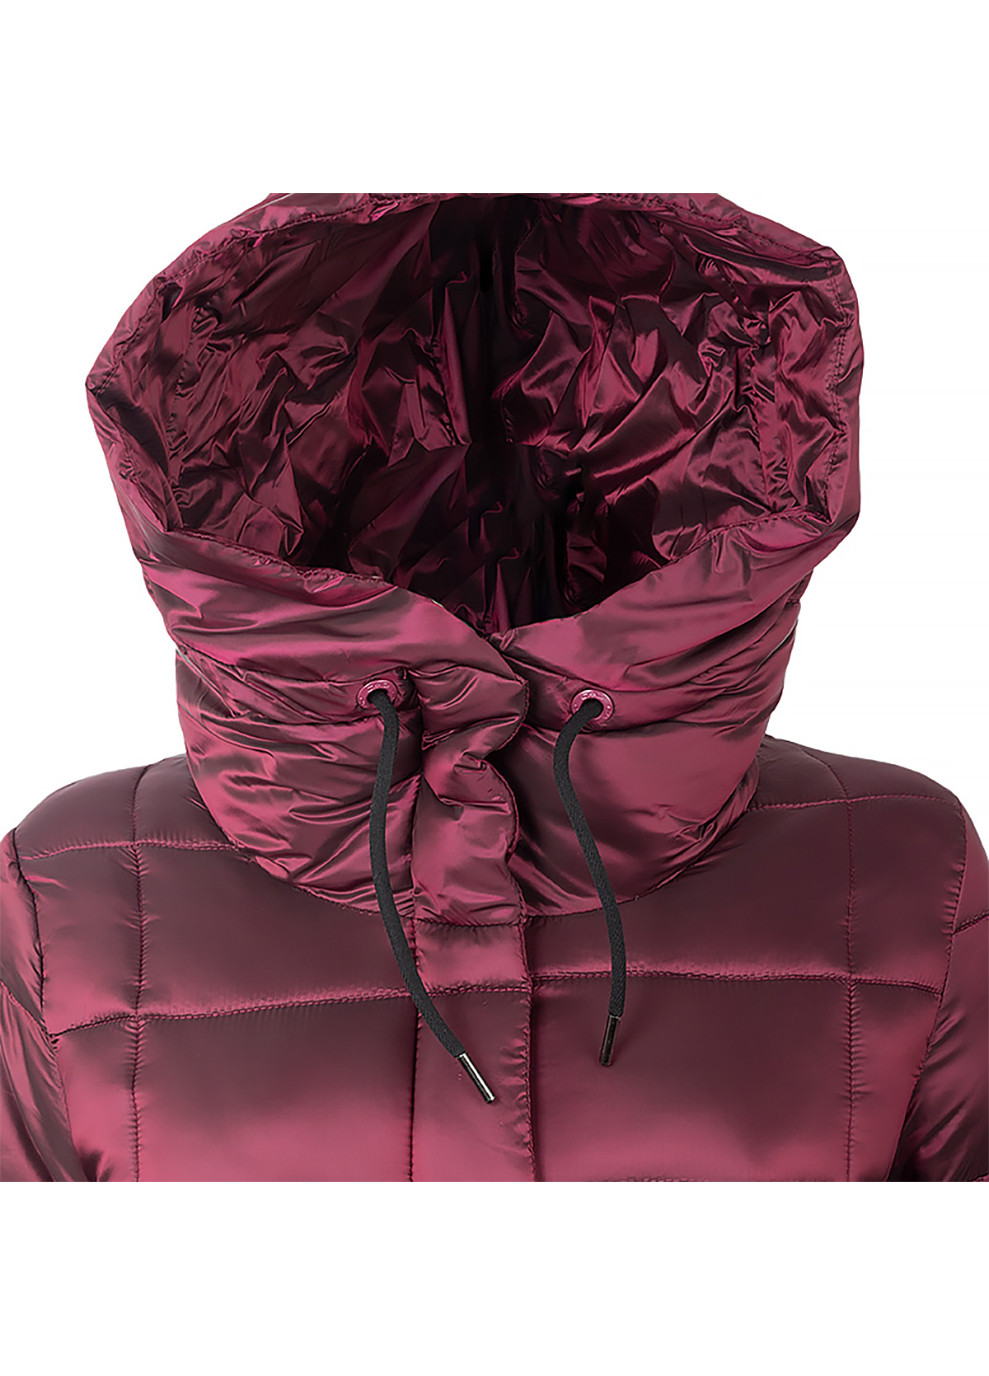 Бордовая зимняя женская куртка coat fix hood бордовый CMP